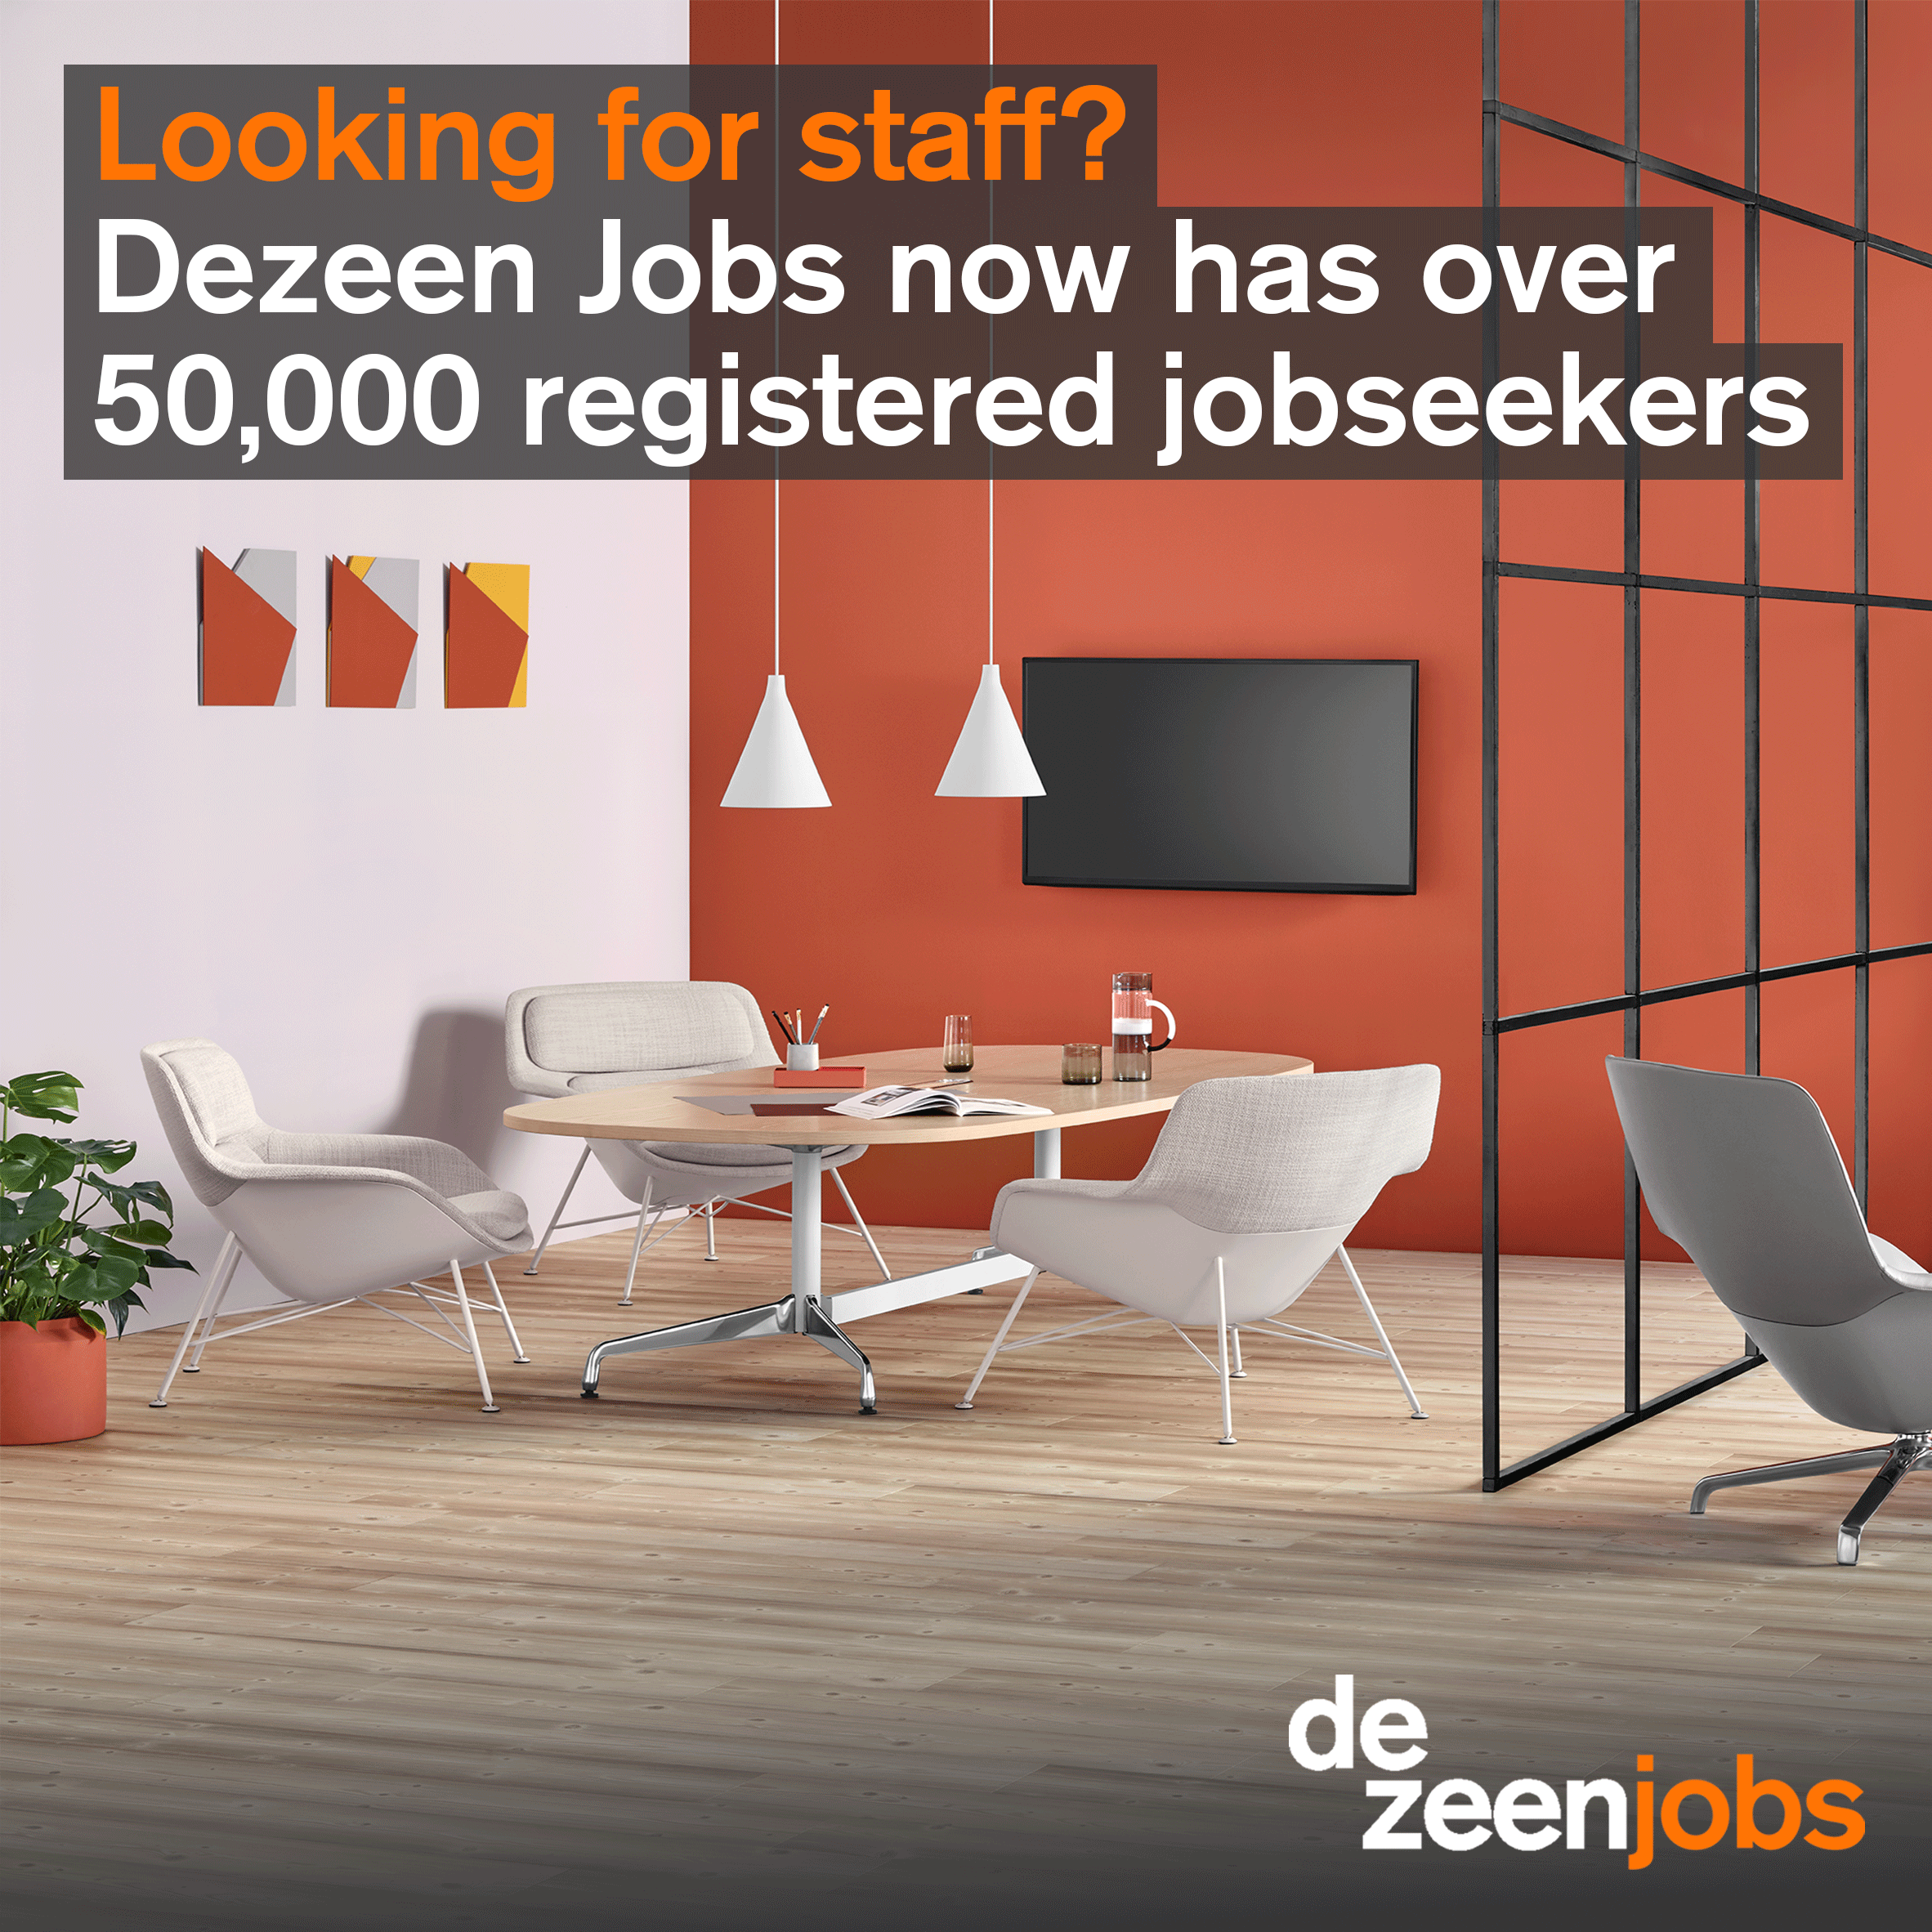 Dezeen Jobs now has over 50,000 registered jobseekers